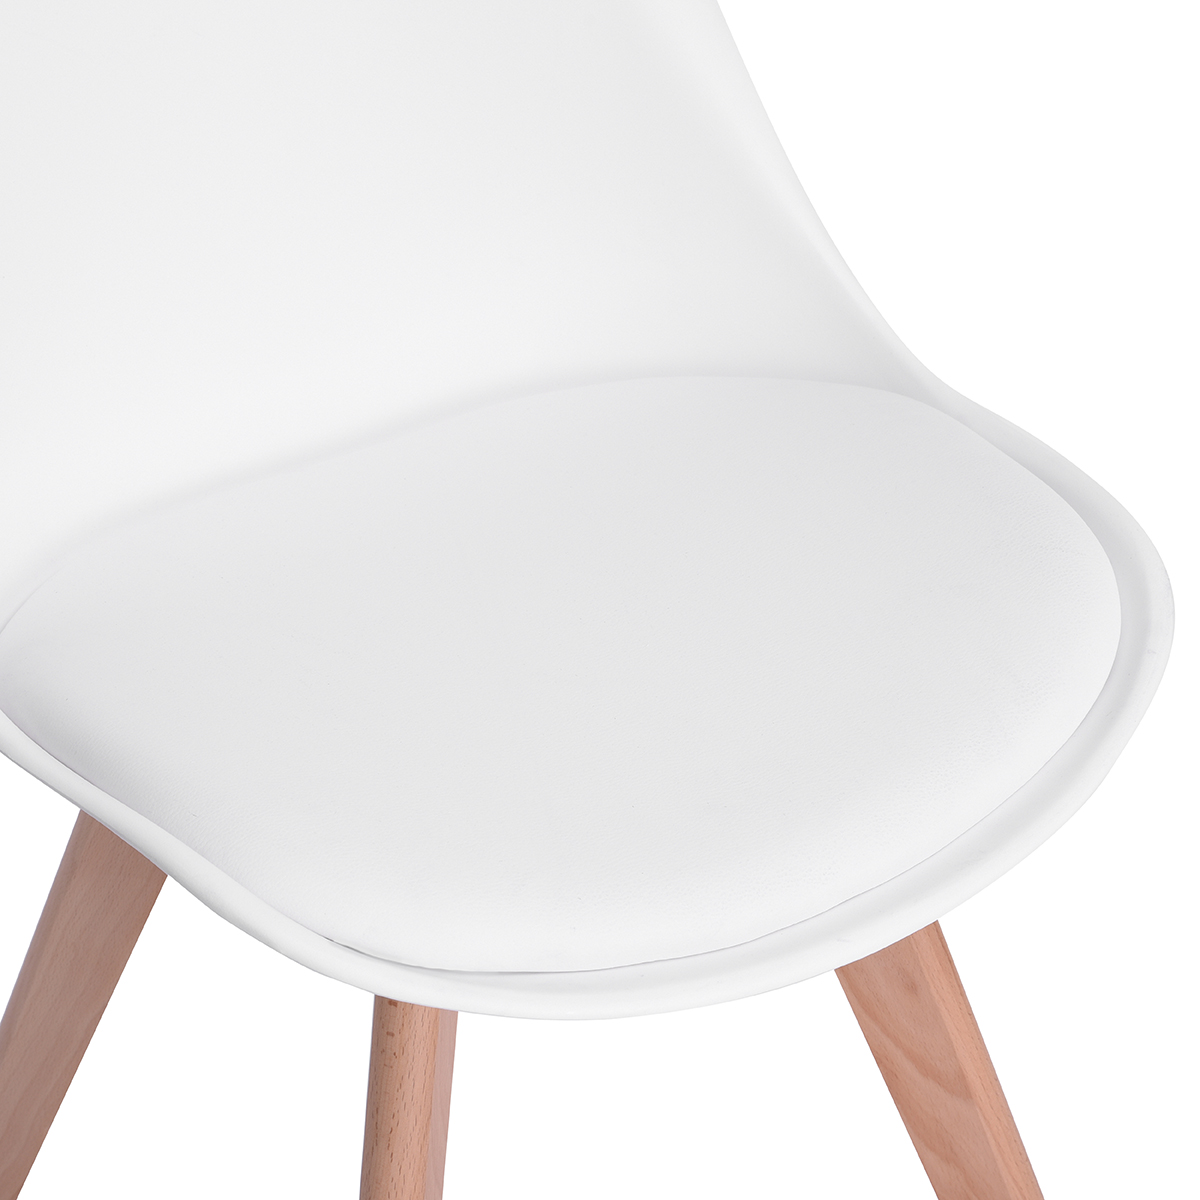 H.J WEDOO Ensemble table à manger de 2 à 4 personnes transparente+2 chaises scandinaves blanches-54*54*82cm